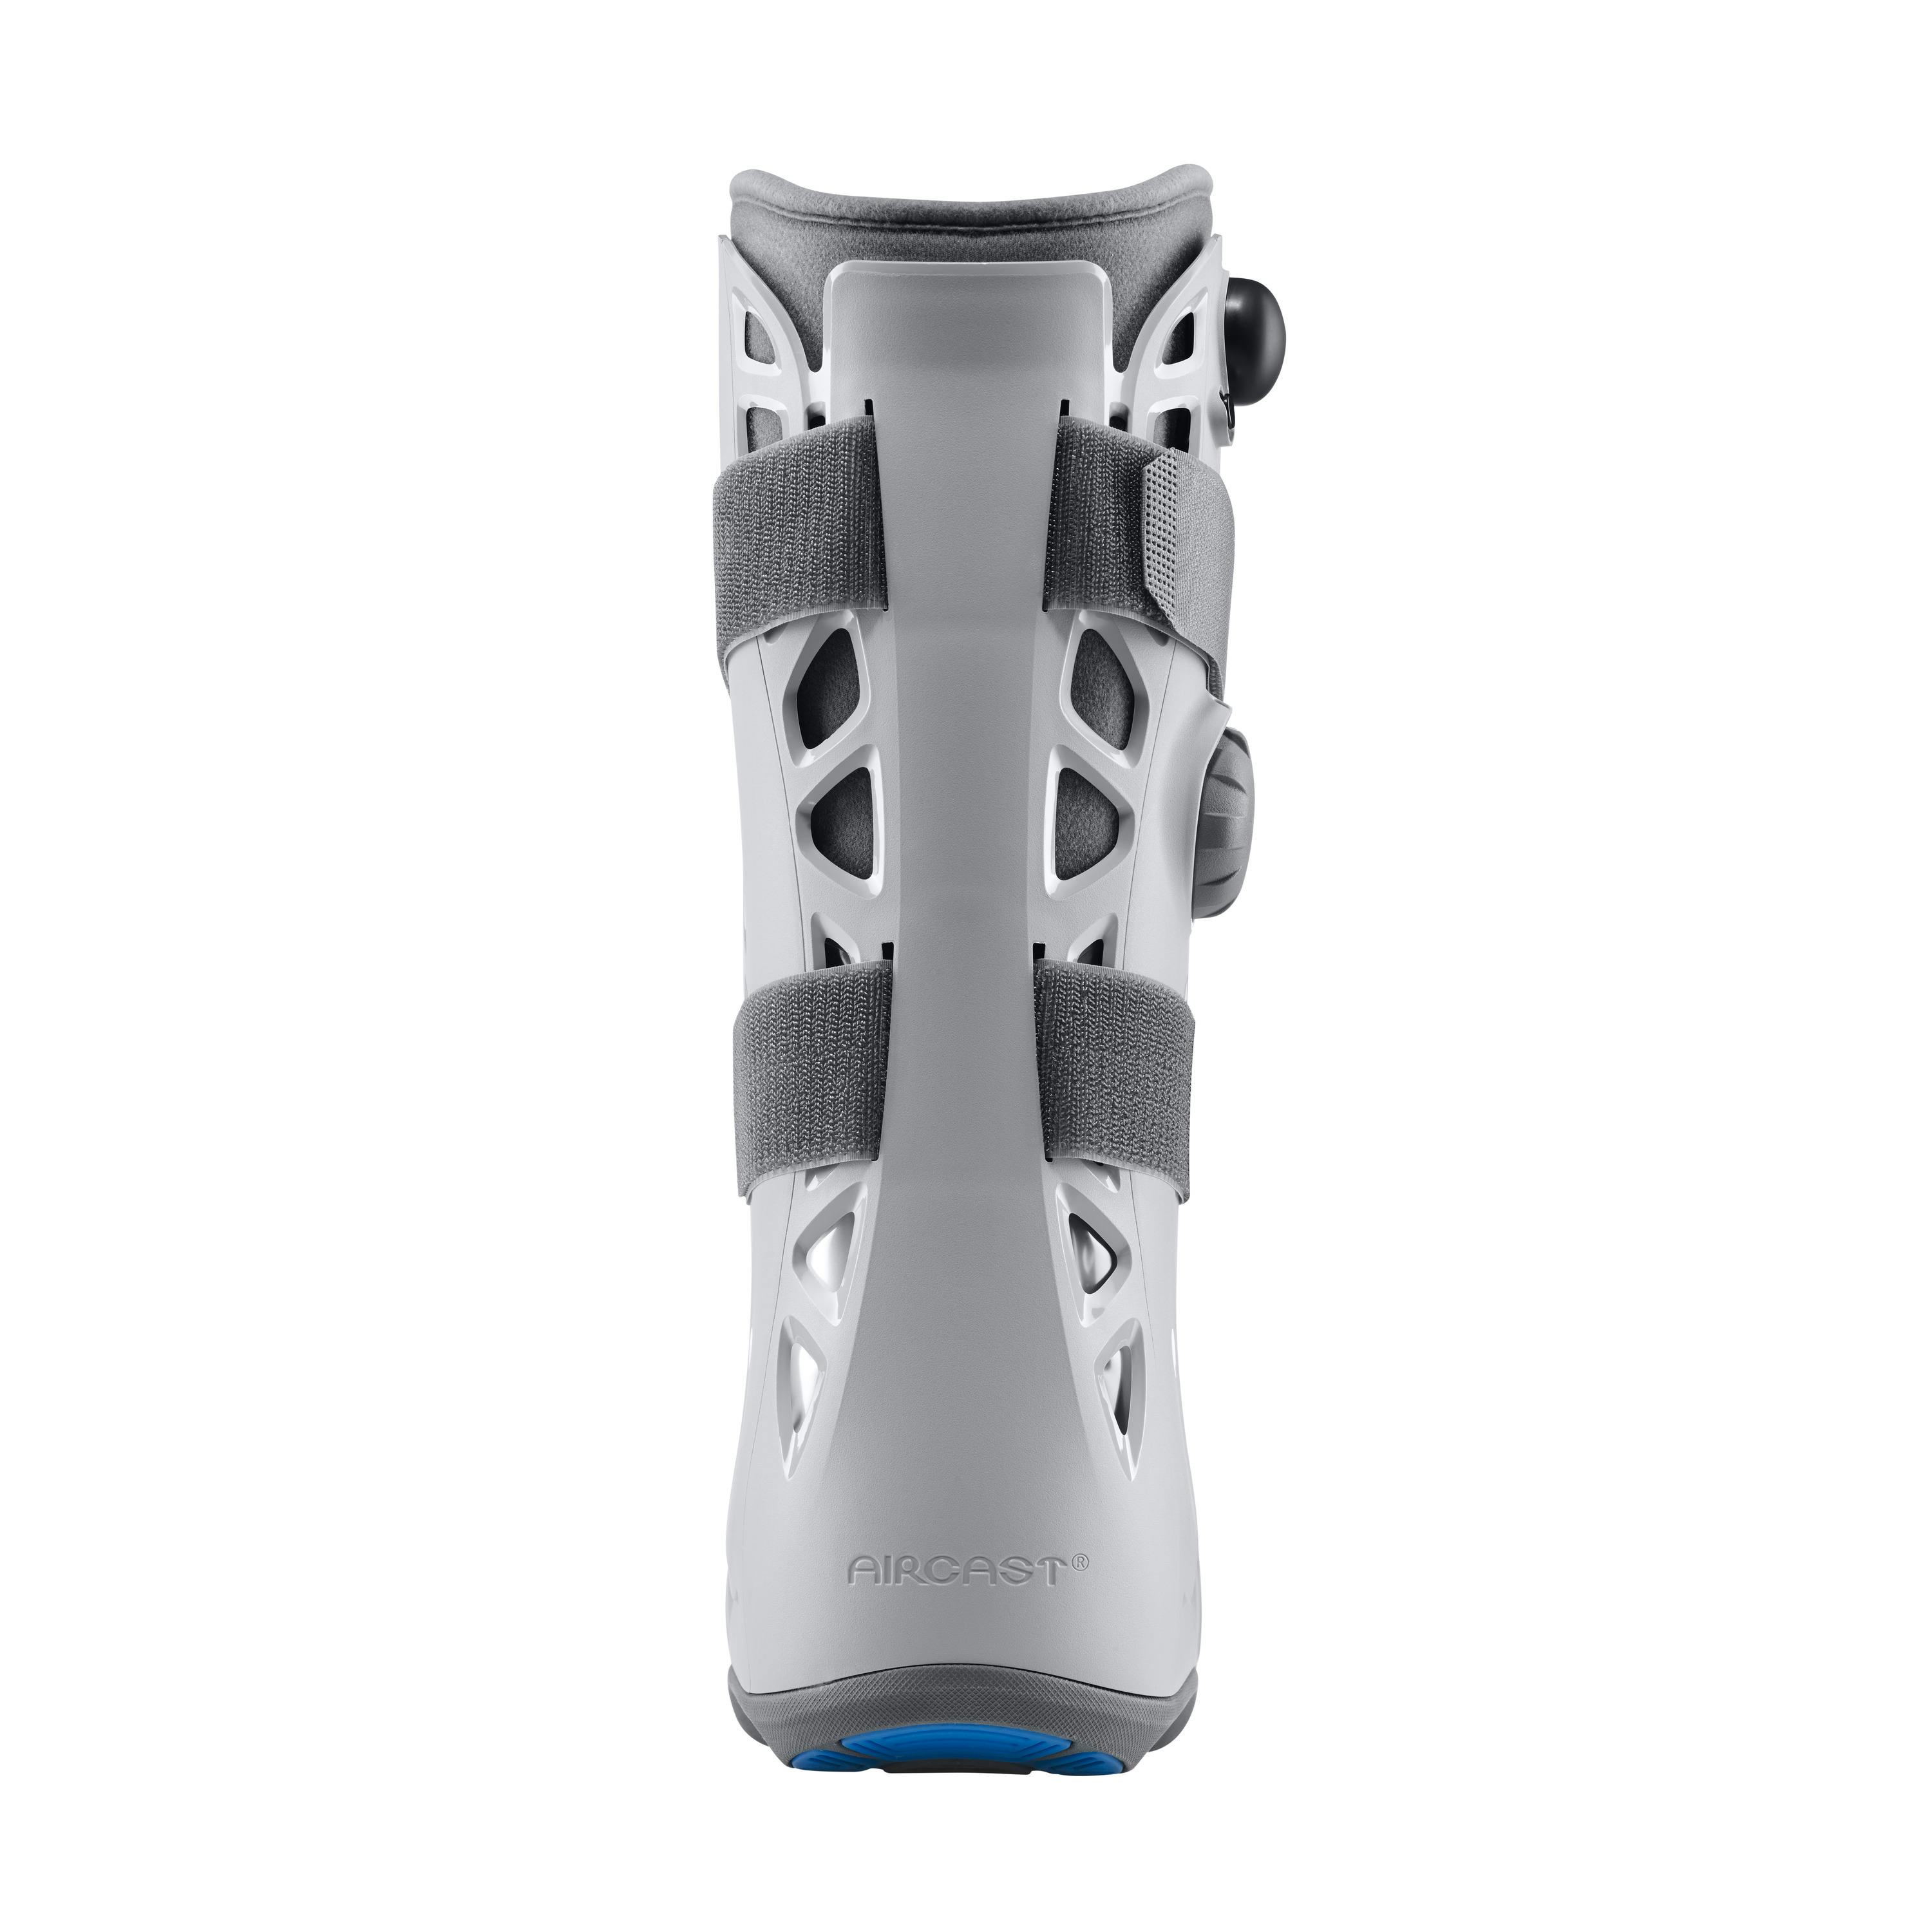 Zusatzbild AIRCAST® Airselect™ Elite Walker Rückansicht, Unterschenkel-Fuß-Orthese zur Immobilisierung in vorgegebener Position